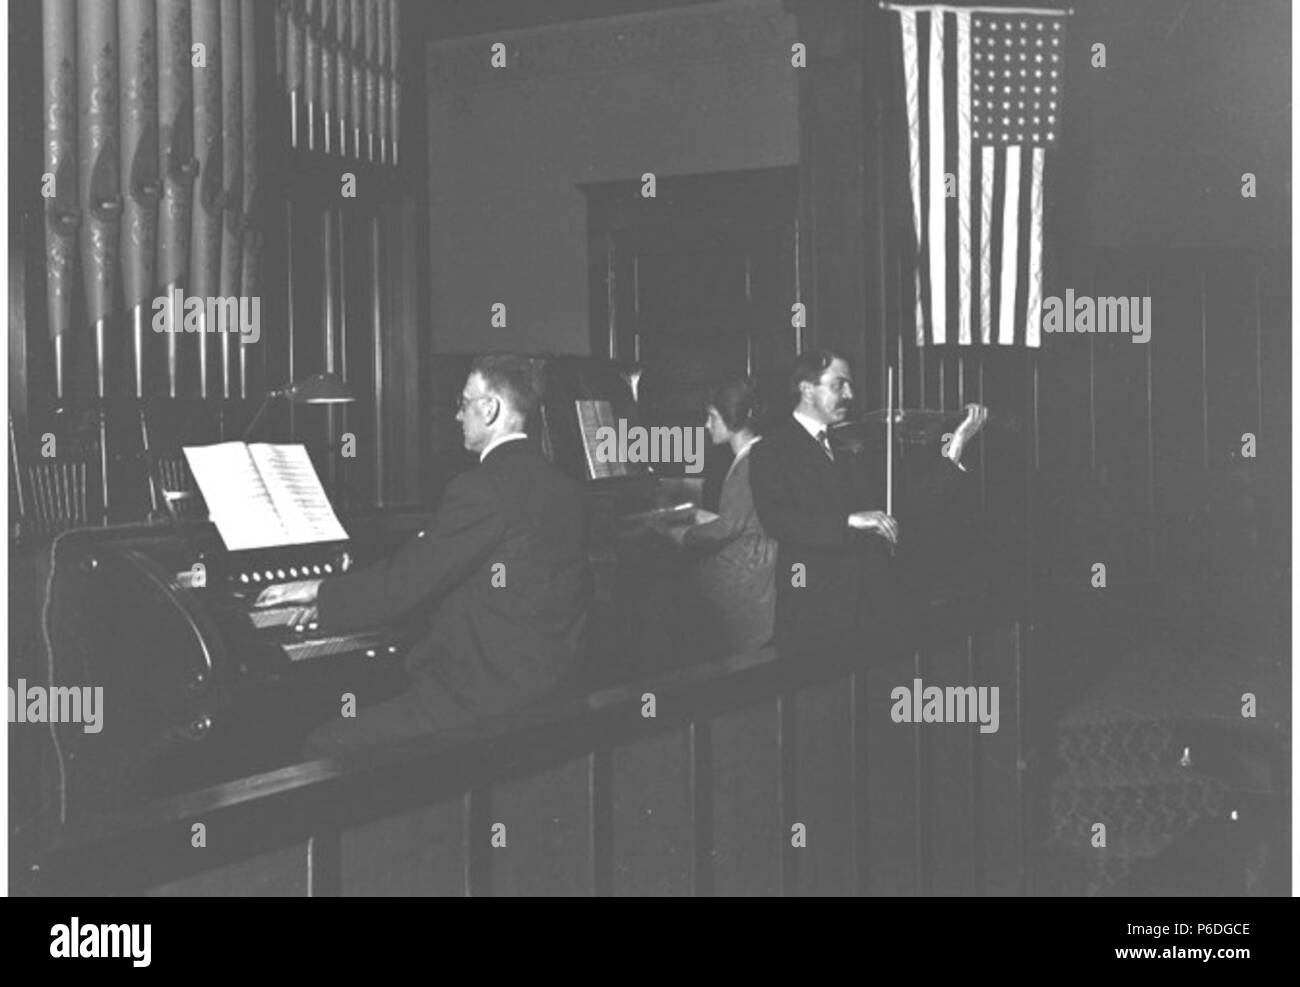 . Anglais : H. Ambrose Kiehl jouer l'orgue de l'église à la première église baptiste de Seattle, Seattle, Washington, 1910 . Anglais : Texte de Kiehl log : H.A. Kiehl à organe. Queen Anne (M.E.) Église 1910. Album 1,245 sujets (LCTGM) : Organes ; Pianos ; les églises baptistes--Washington (État)--Seattle Sujets (LCSH) : Kiehl, H. Ambrose ; First Baptist Church (Seattle, Washington) ;--organistes Washington (État)--Seattle ;--pianistes Washington (État)--Seattle ; violonistes--Washington (État)--Seattle Concepts : Performing arts ; Religion ; Americana . 1910 51 h Ambrose Kiehl jouer l'orgue de l'église à la Seattle Banque D'Images